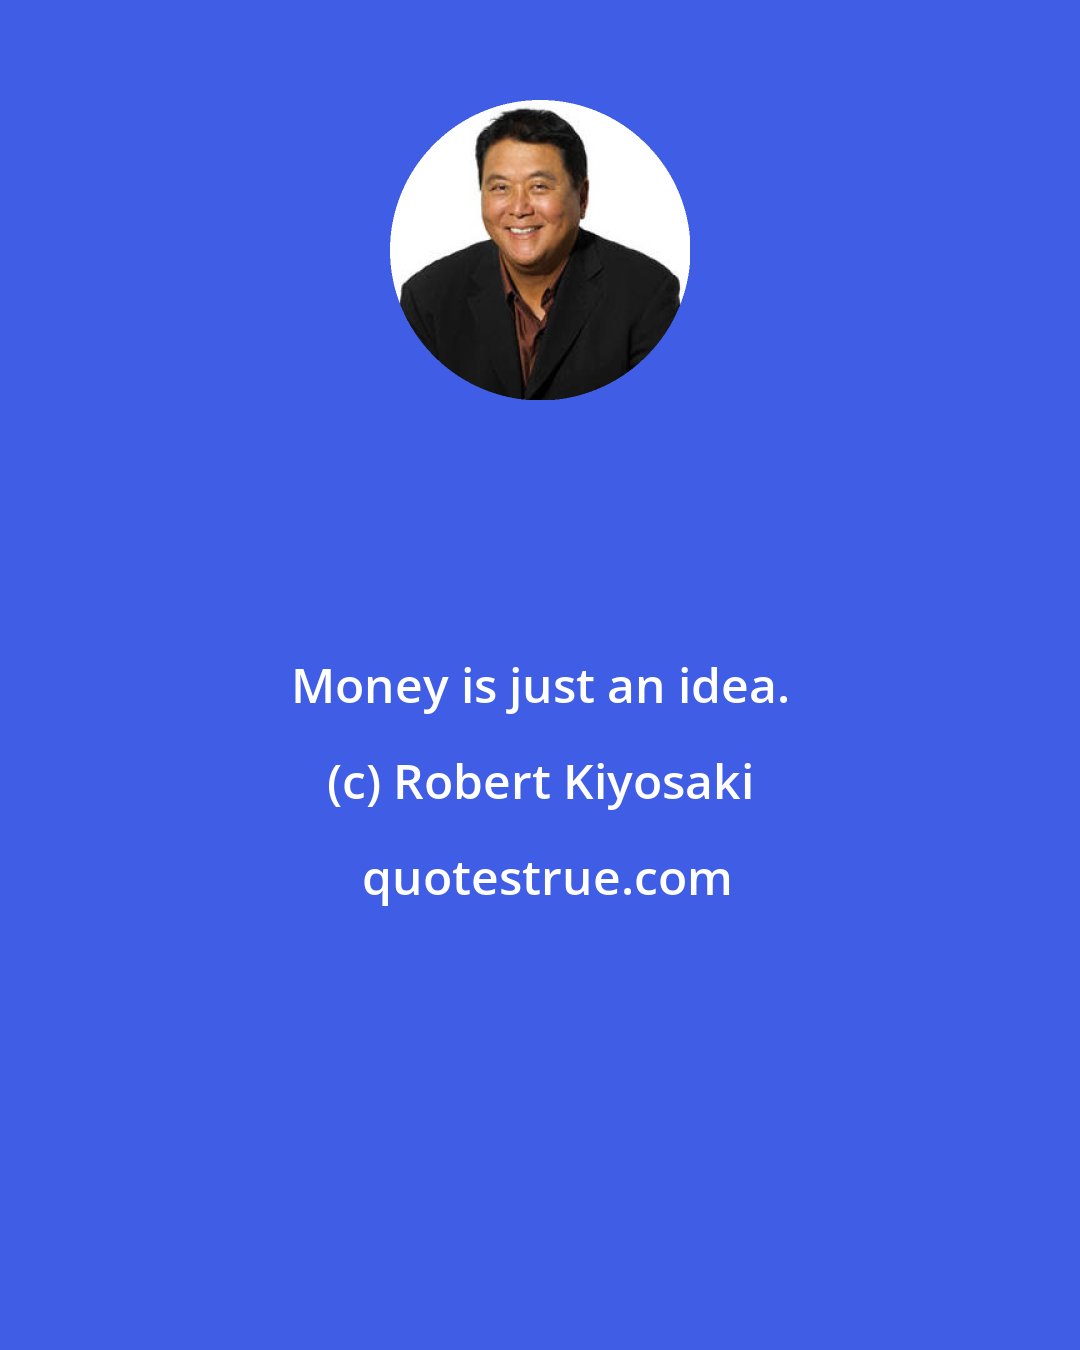 Robert Kiyosaki: Money is just an idea.